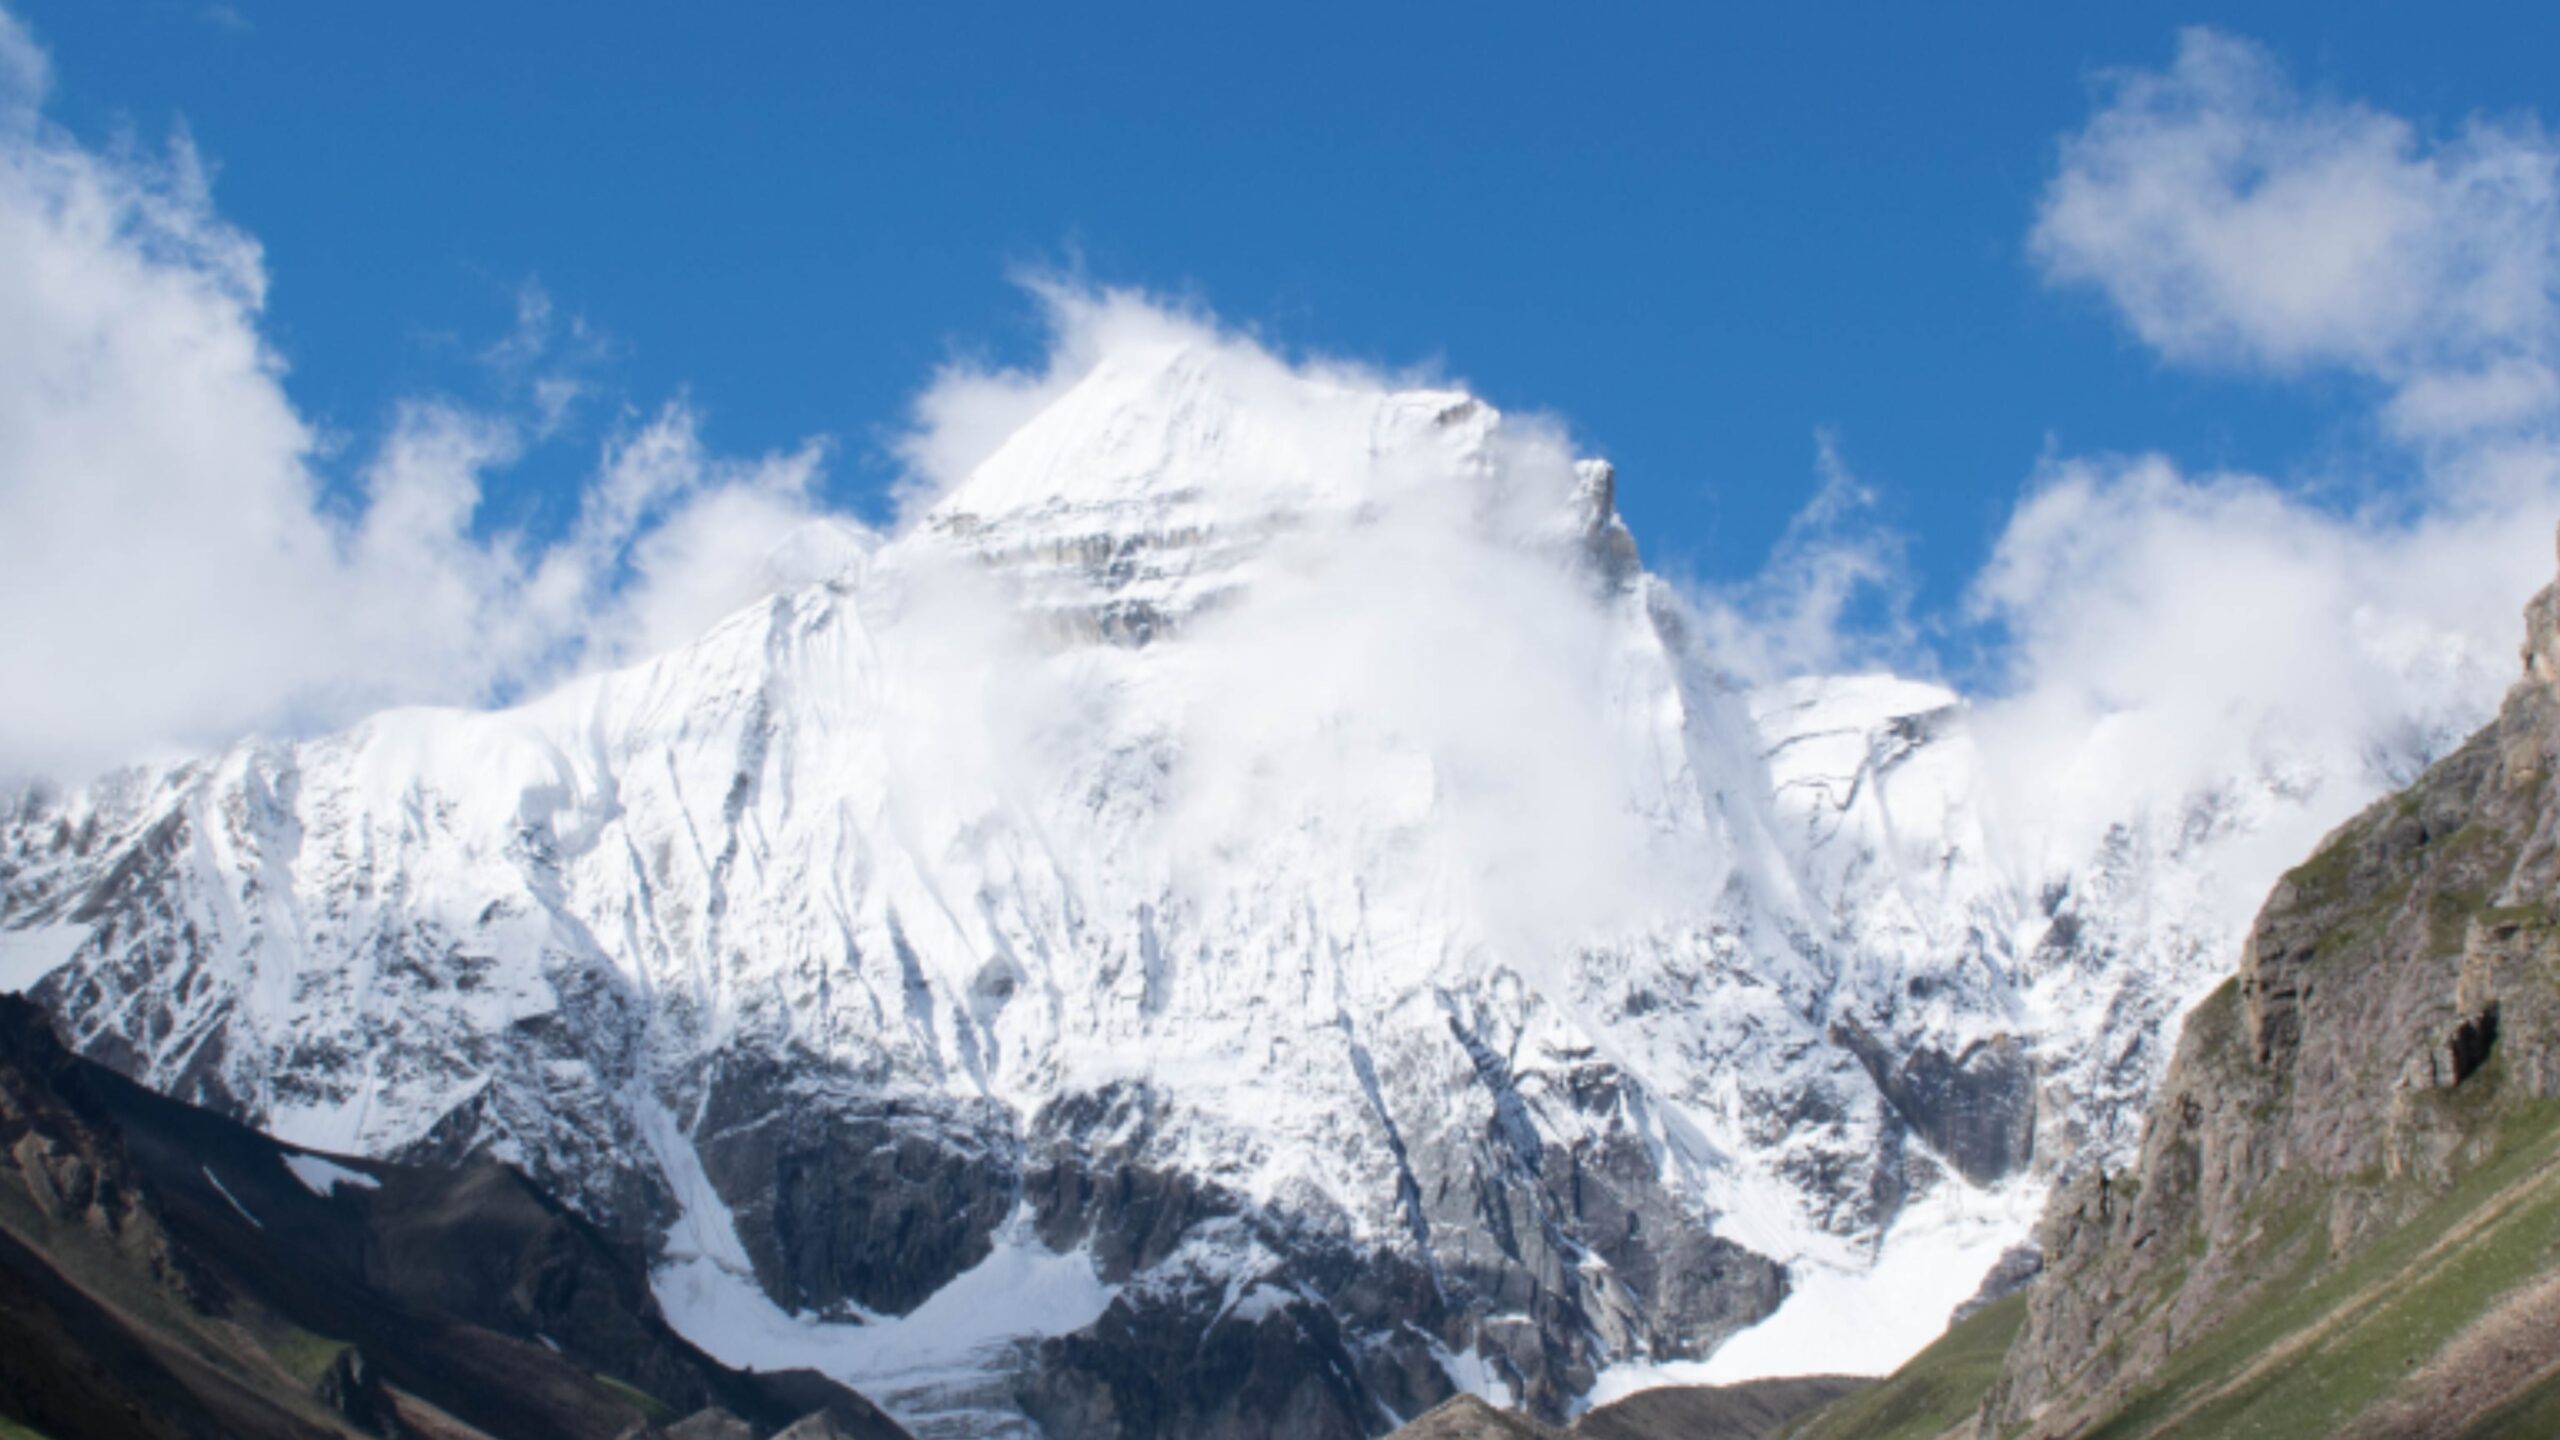 Himalayan Peaks of Pithoragarh